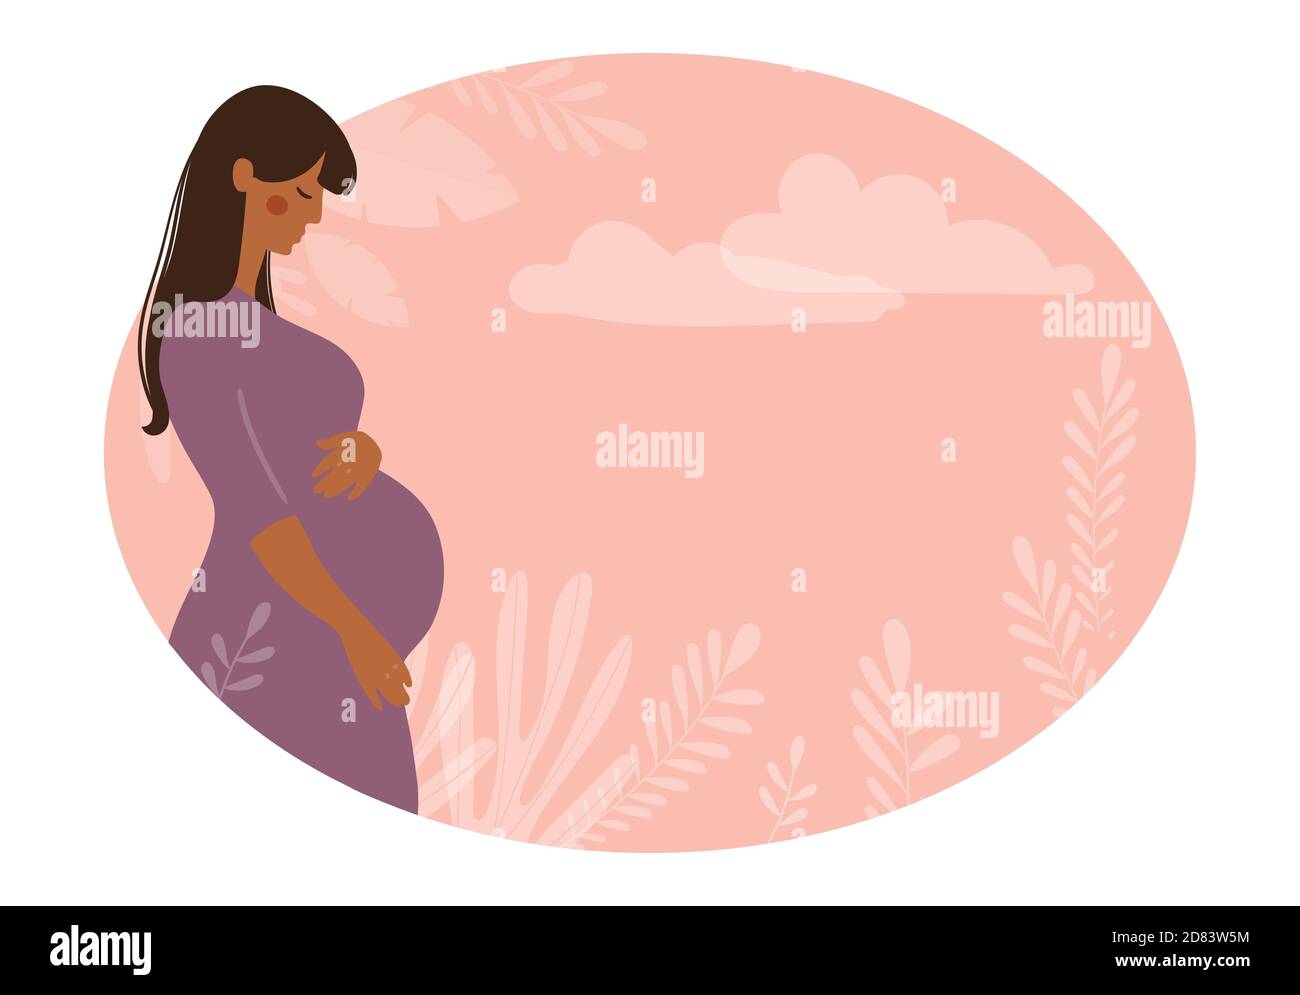 Modernes Banner über Schwangerschaft und Mutterschaft. Poster mit einer schönen jungen schwangeren Frau mit langen Haaren und Platz für Text. Minimalistisches Design, flache Cartoon-Vektor-Illustration Stock Vektor